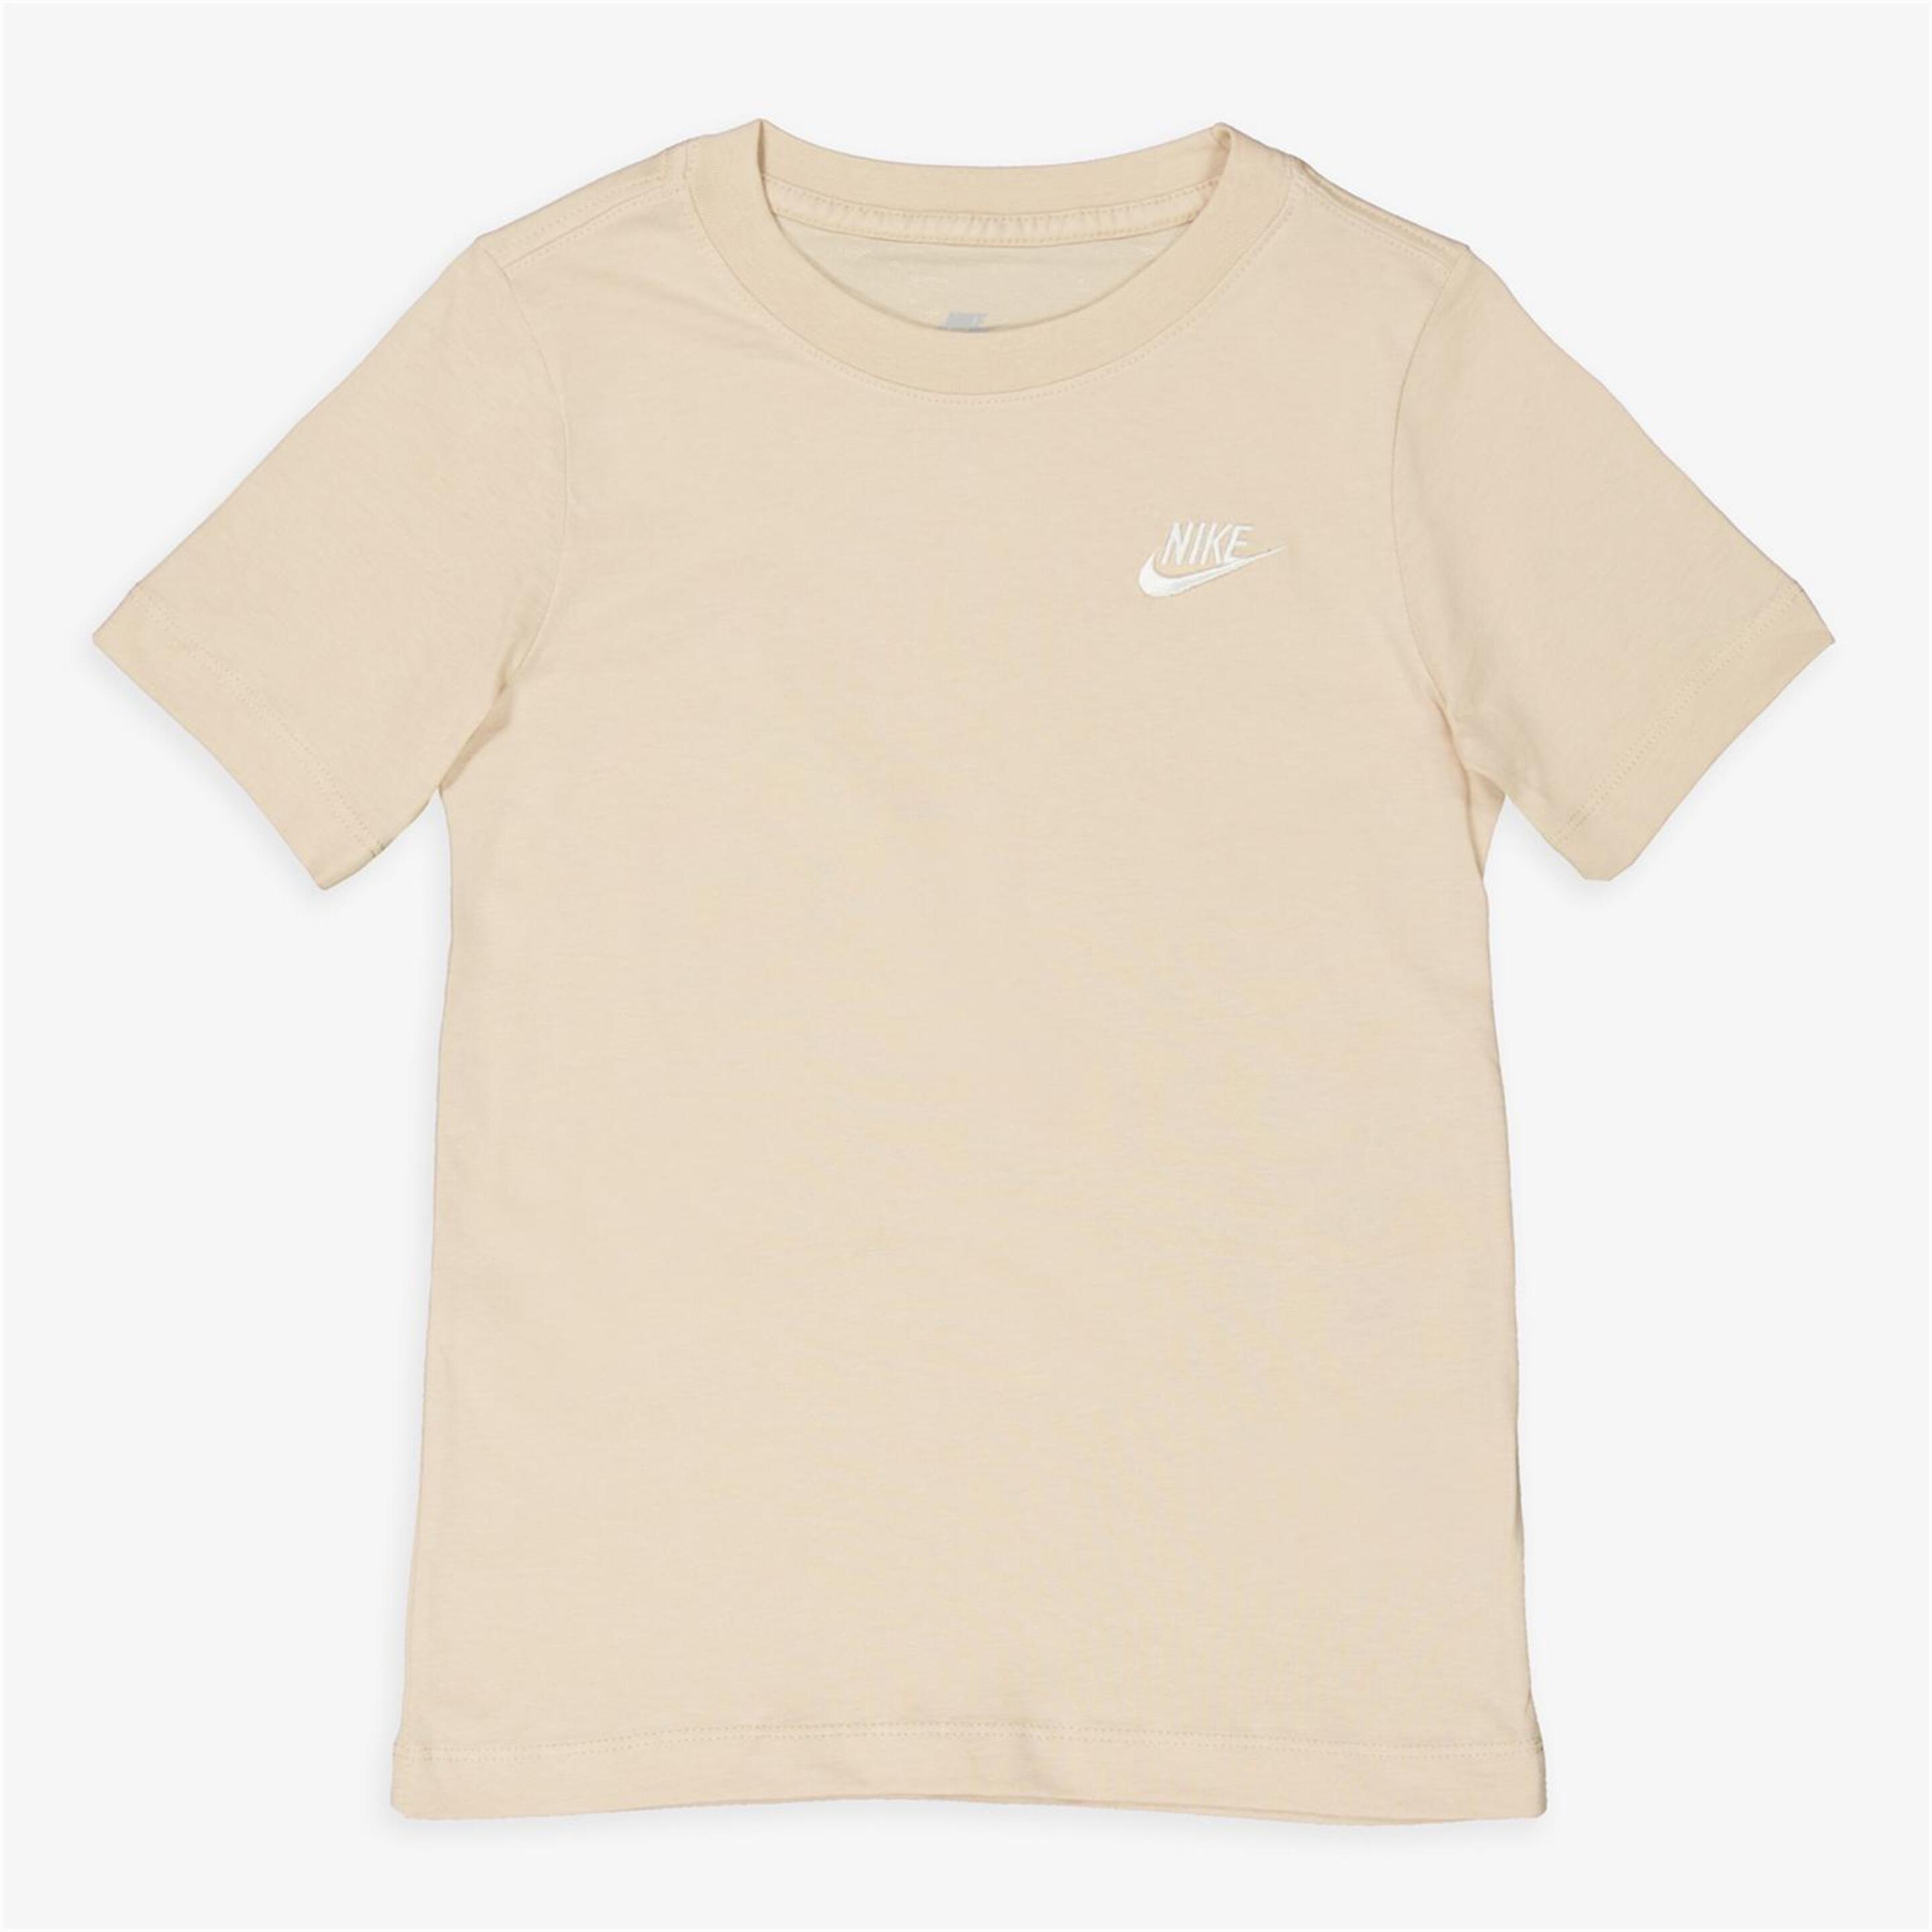 Camiseta Nike - Marrón - Camiseta Niño